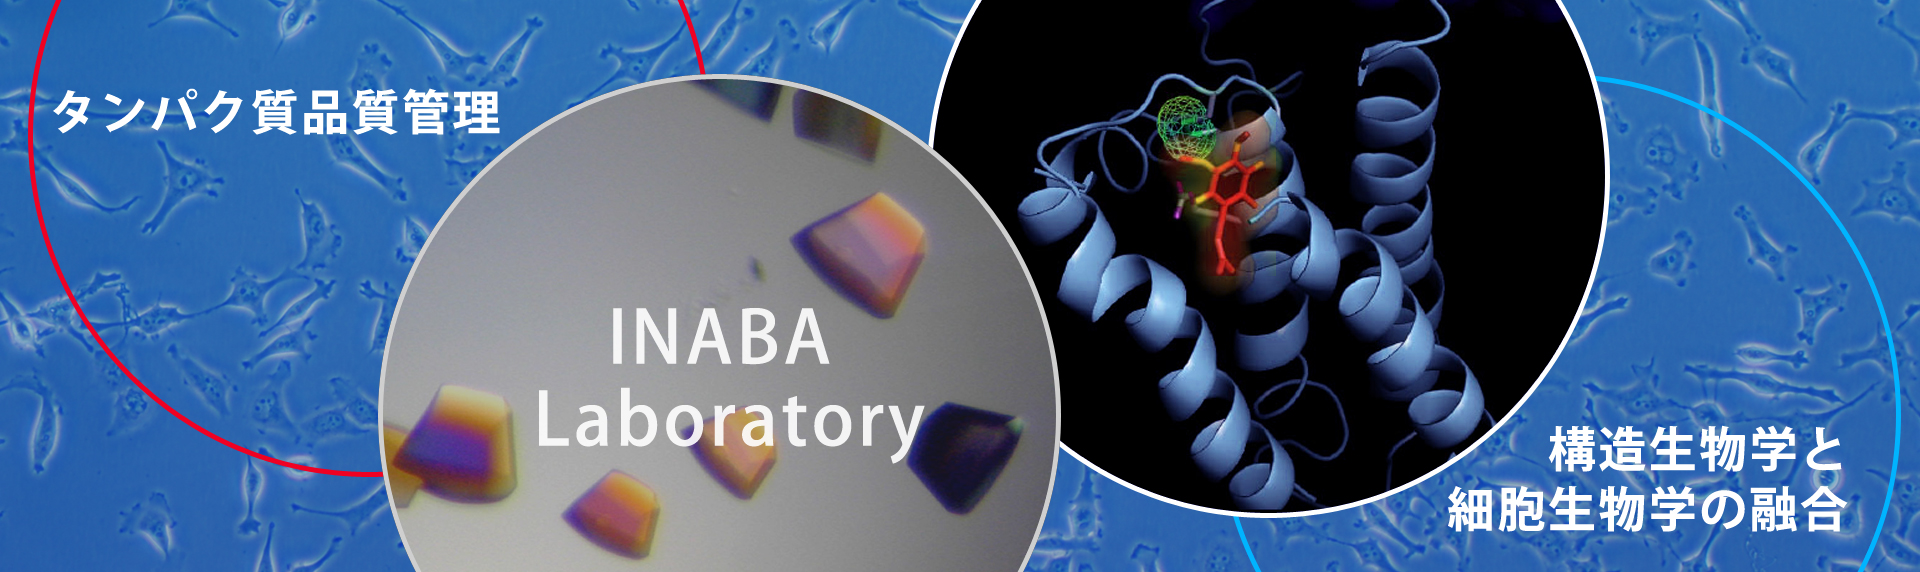 タンパク質品質管理、構造生物学と細胞生物学の融合 INABA Laboratory